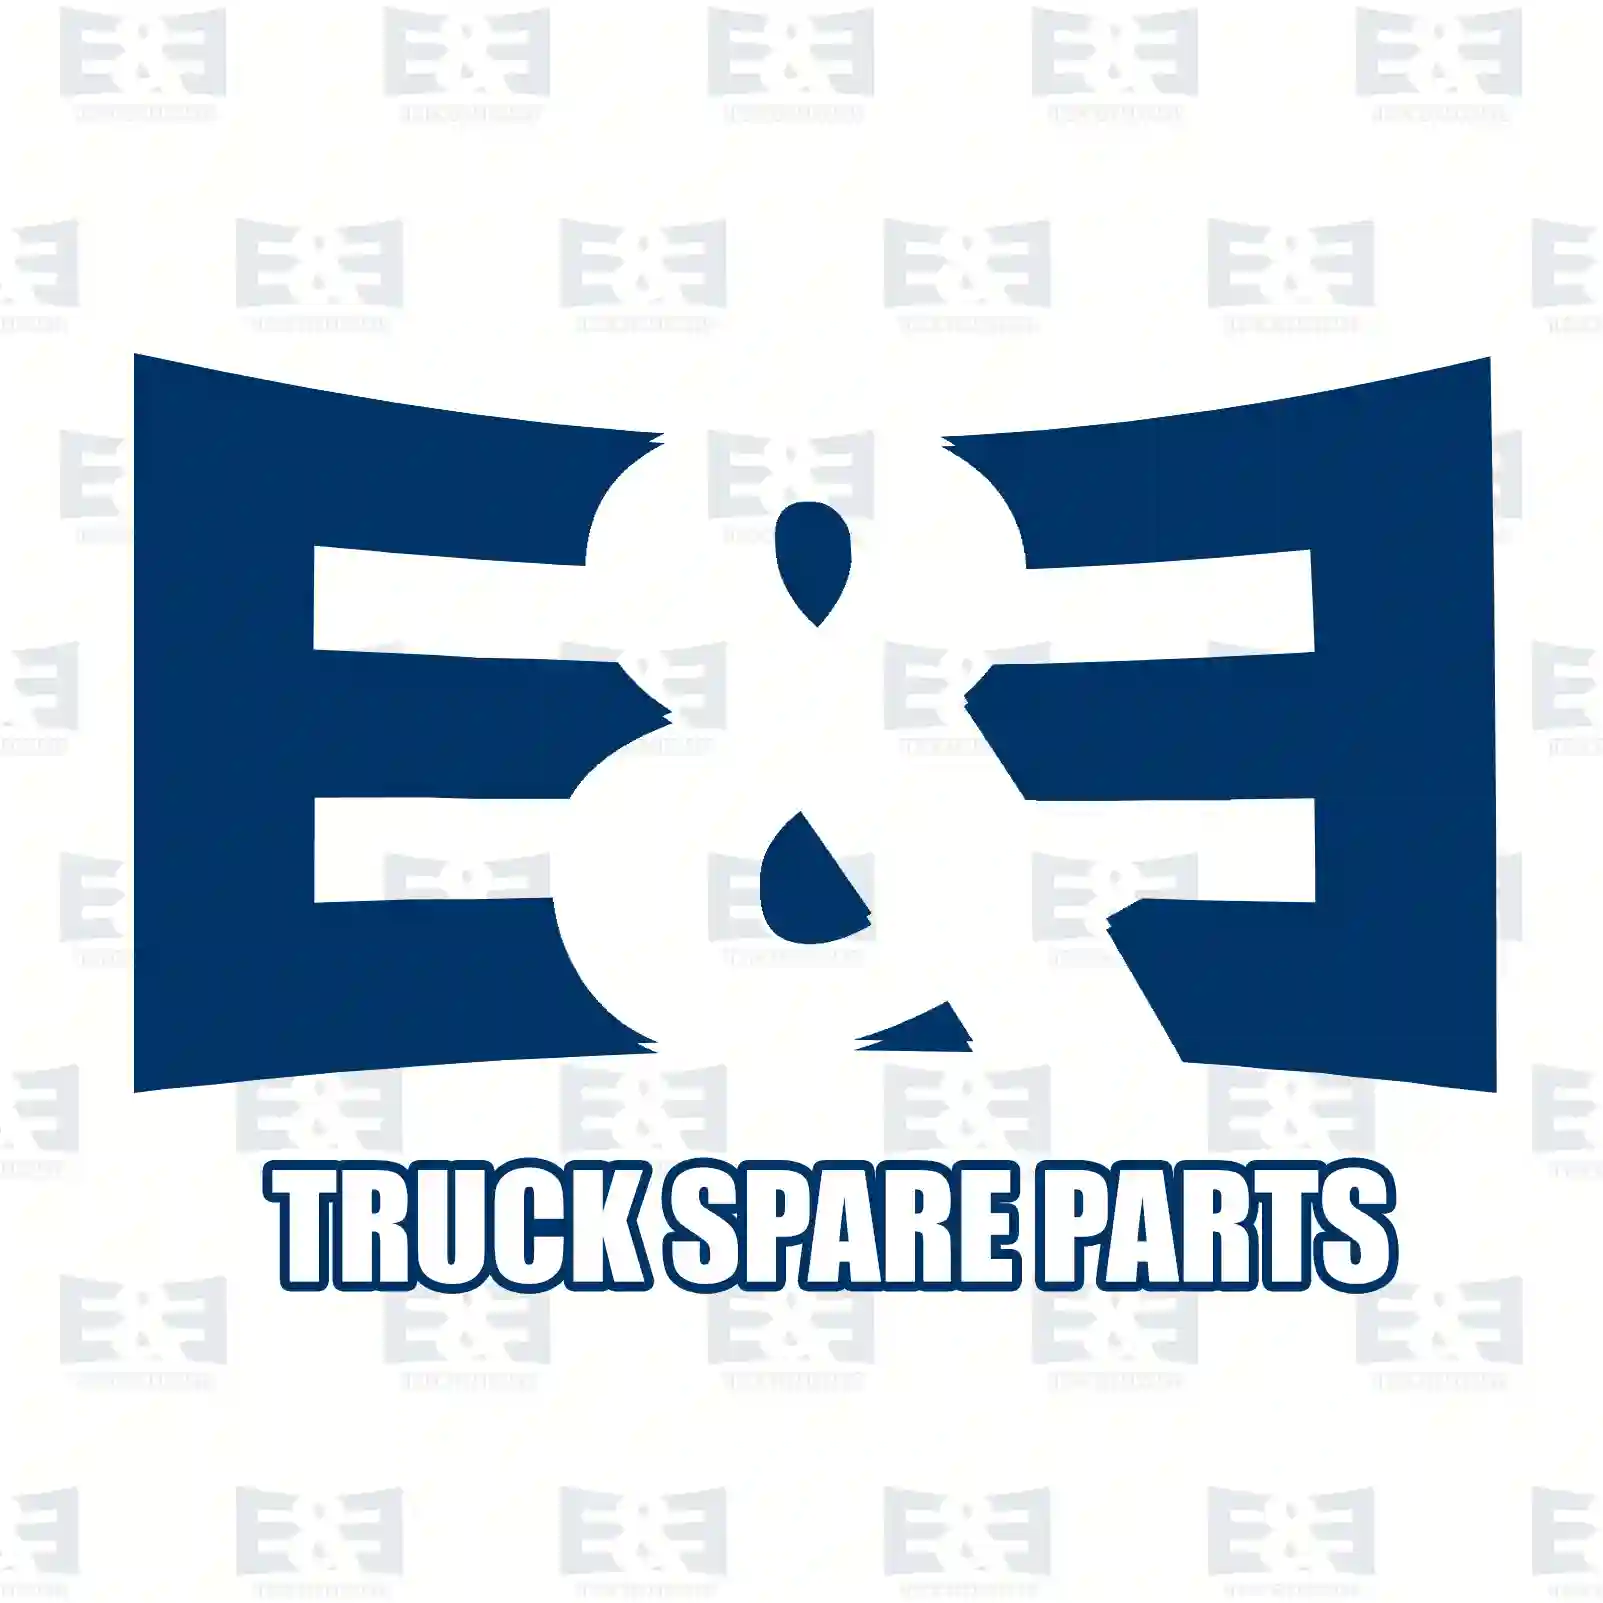 Water pump, 2E2202521, 2003494, 2104576, ZG00741-0008 ||  2E2202521 E&E Truck Spare Parts | Truck Spare Parts, Auotomotive Spare Parts Water pump, 2E2202521, 2003494, 2104576, ZG00741-0008 ||  2E2202521 E&E Truck Spare Parts | Truck Spare Parts, Auotomotive Spare Parts